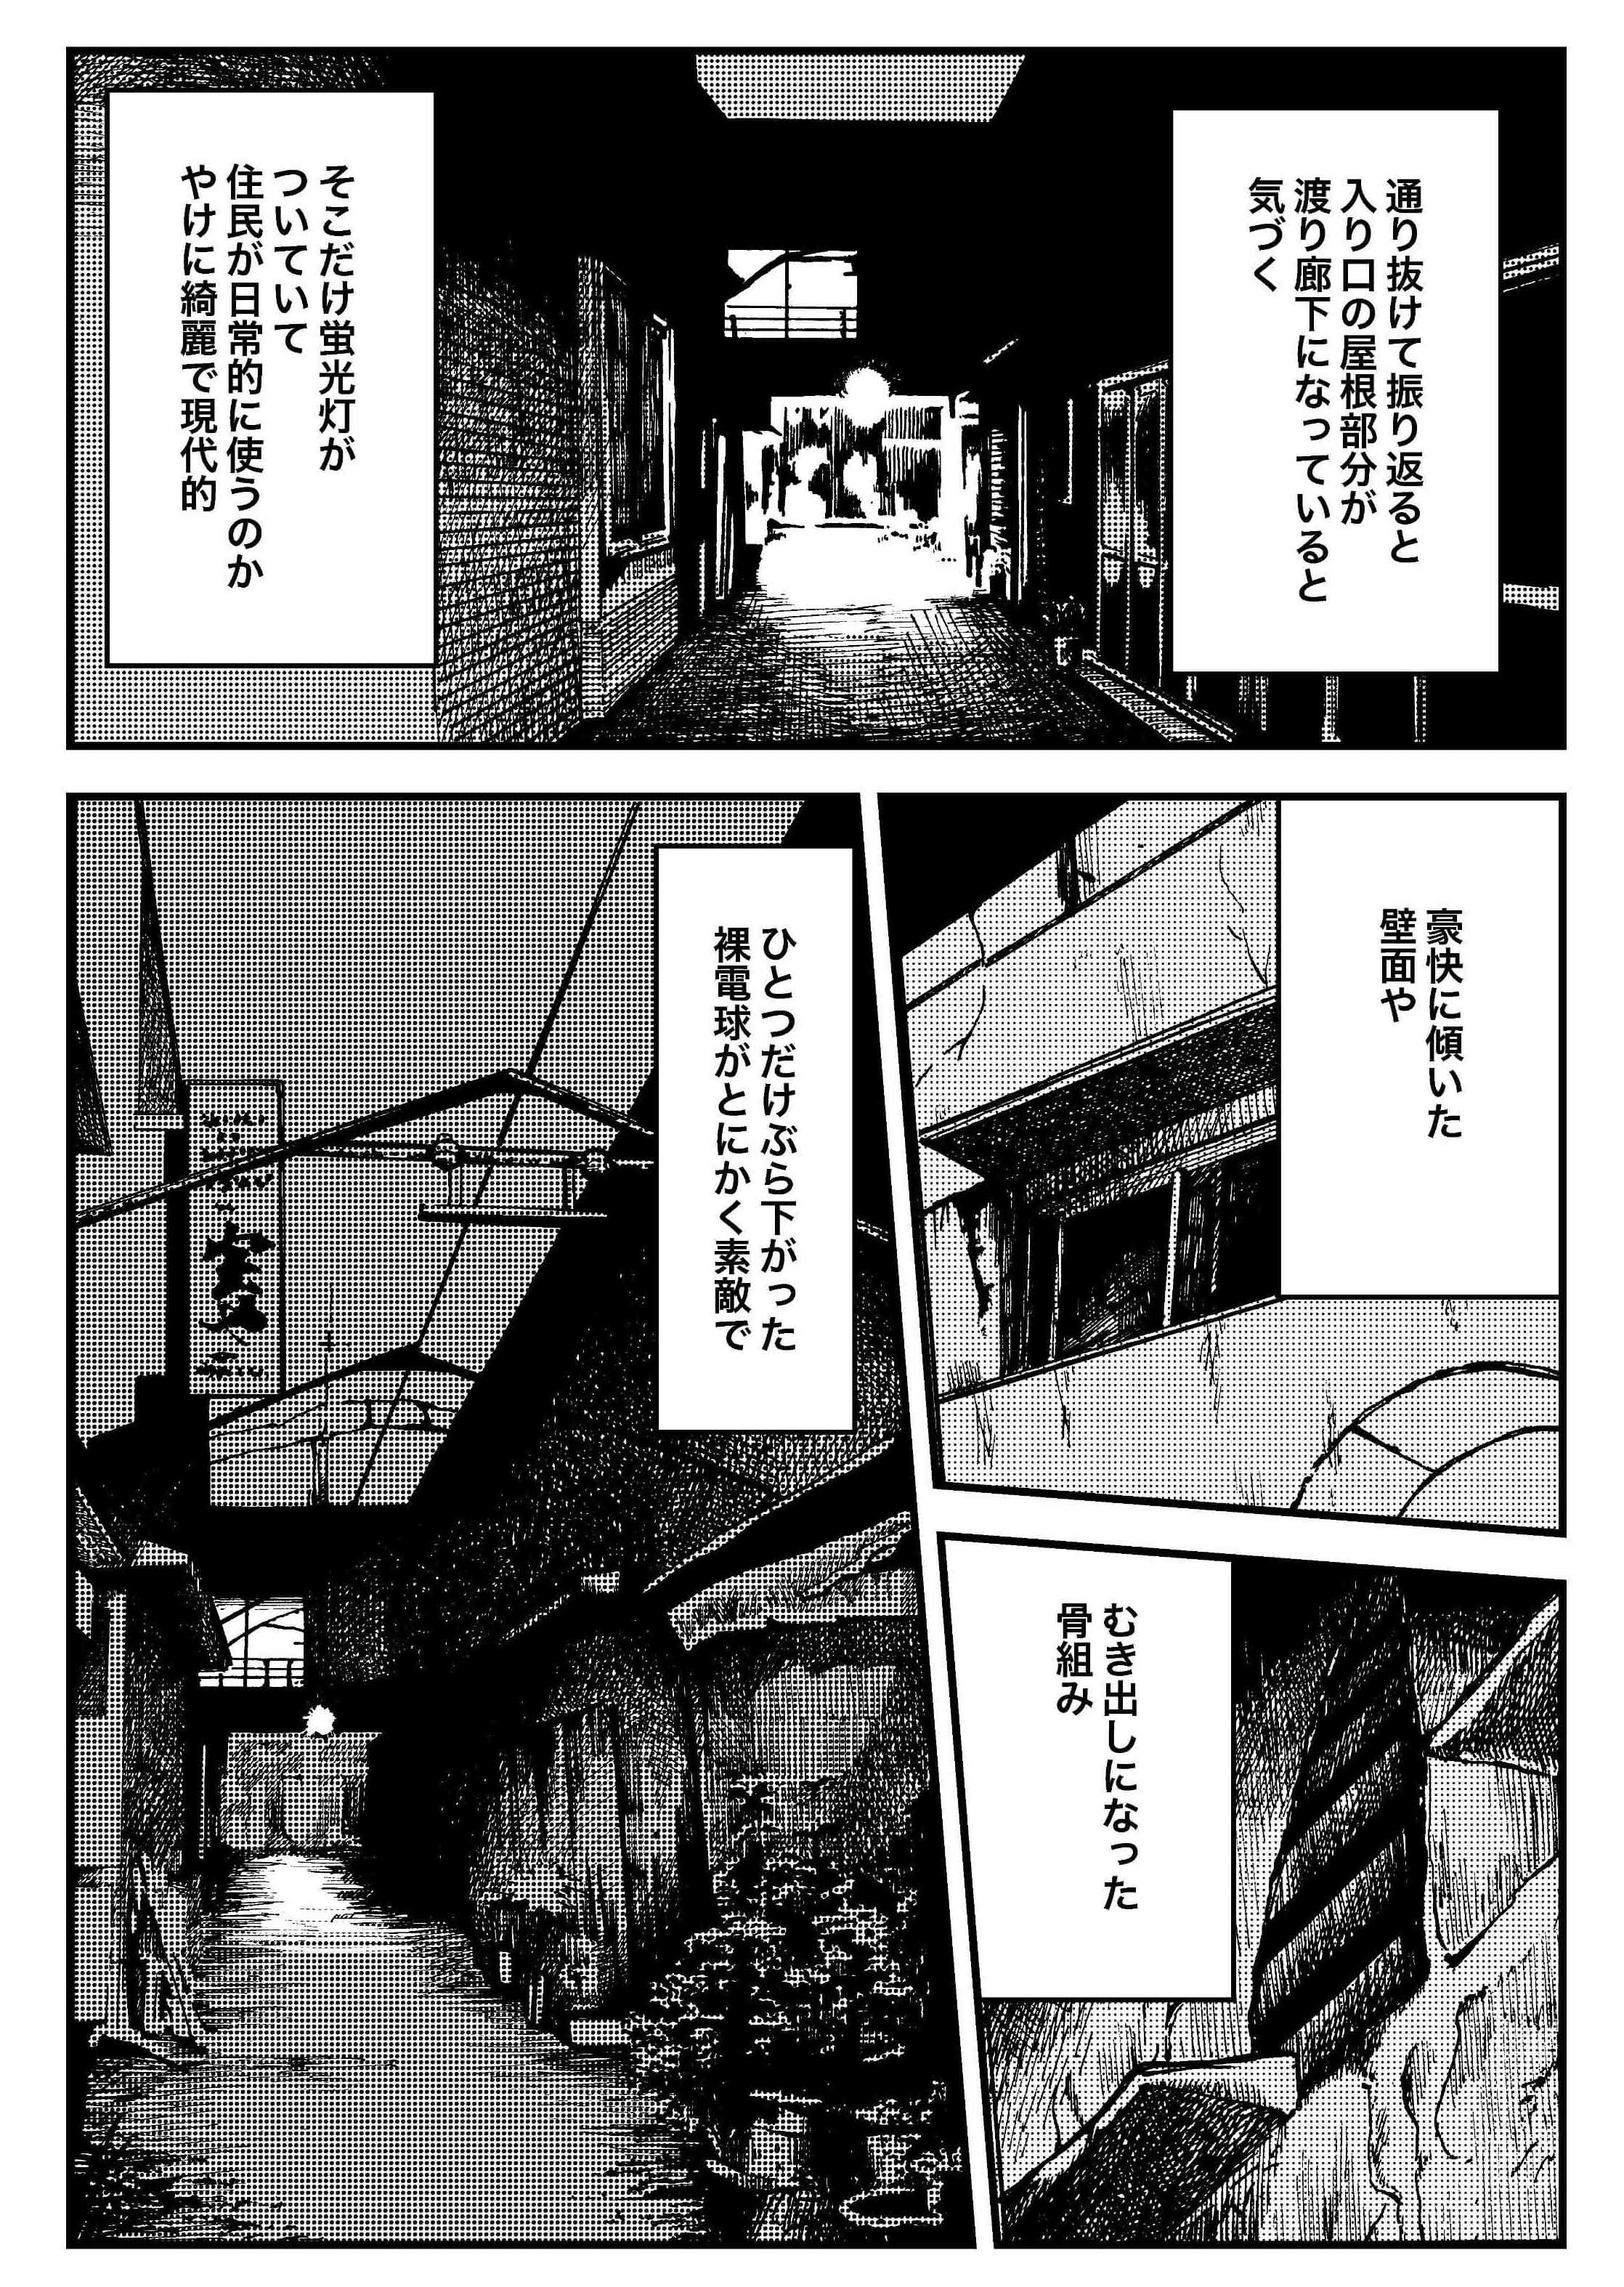 『夜活～夜の街を散歩した日記漫画～』／森凡 １４.jpg